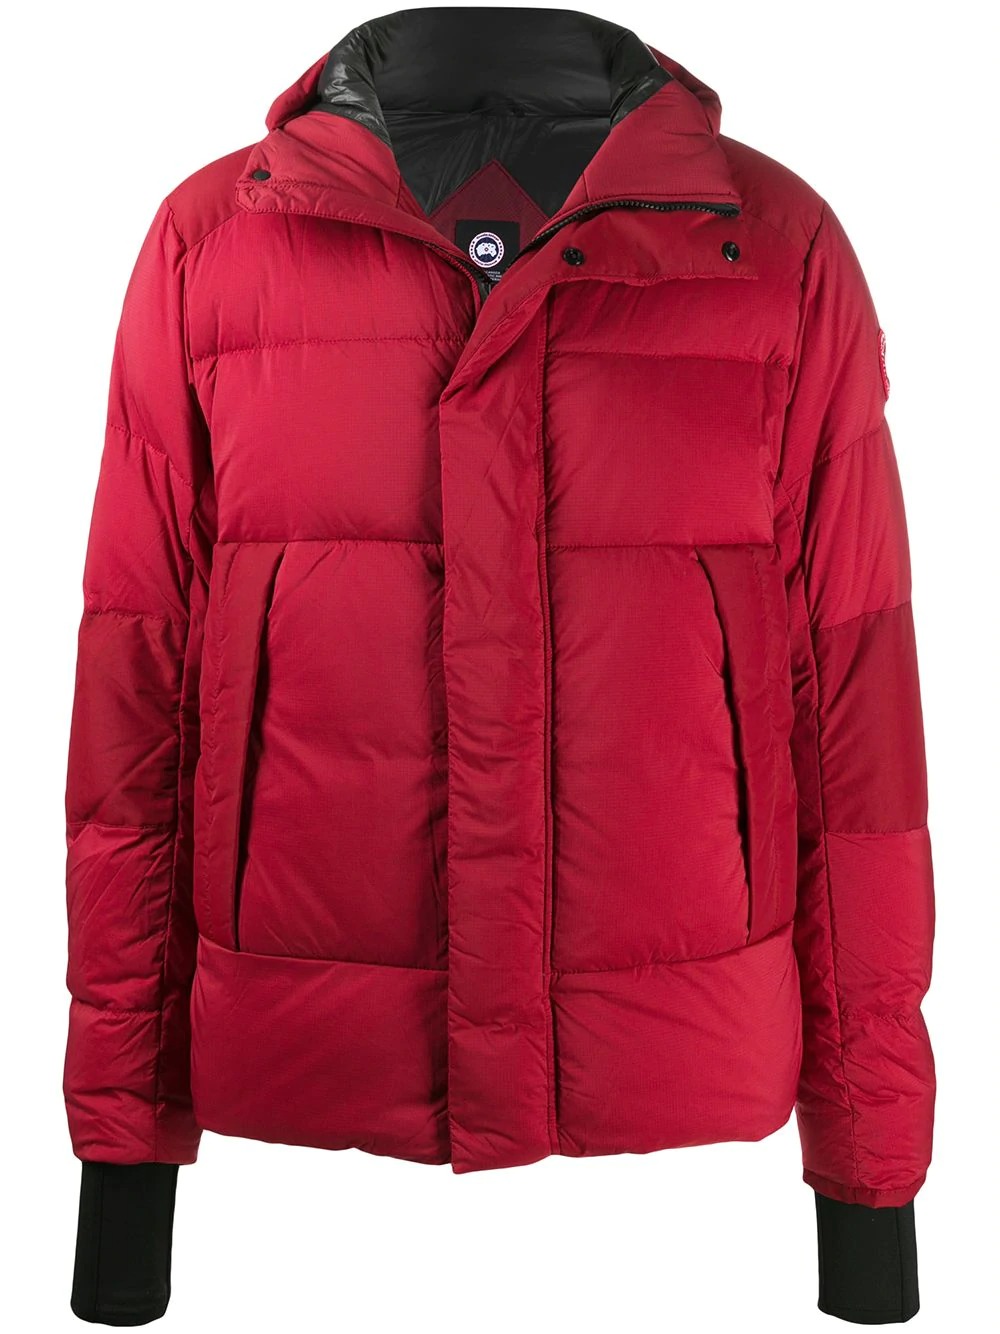 赤のダウンジャケットが冬コーデをリフレッシュするのに使える おすすめアイテムを厳選紹介 メンズファッションメディア Iicf